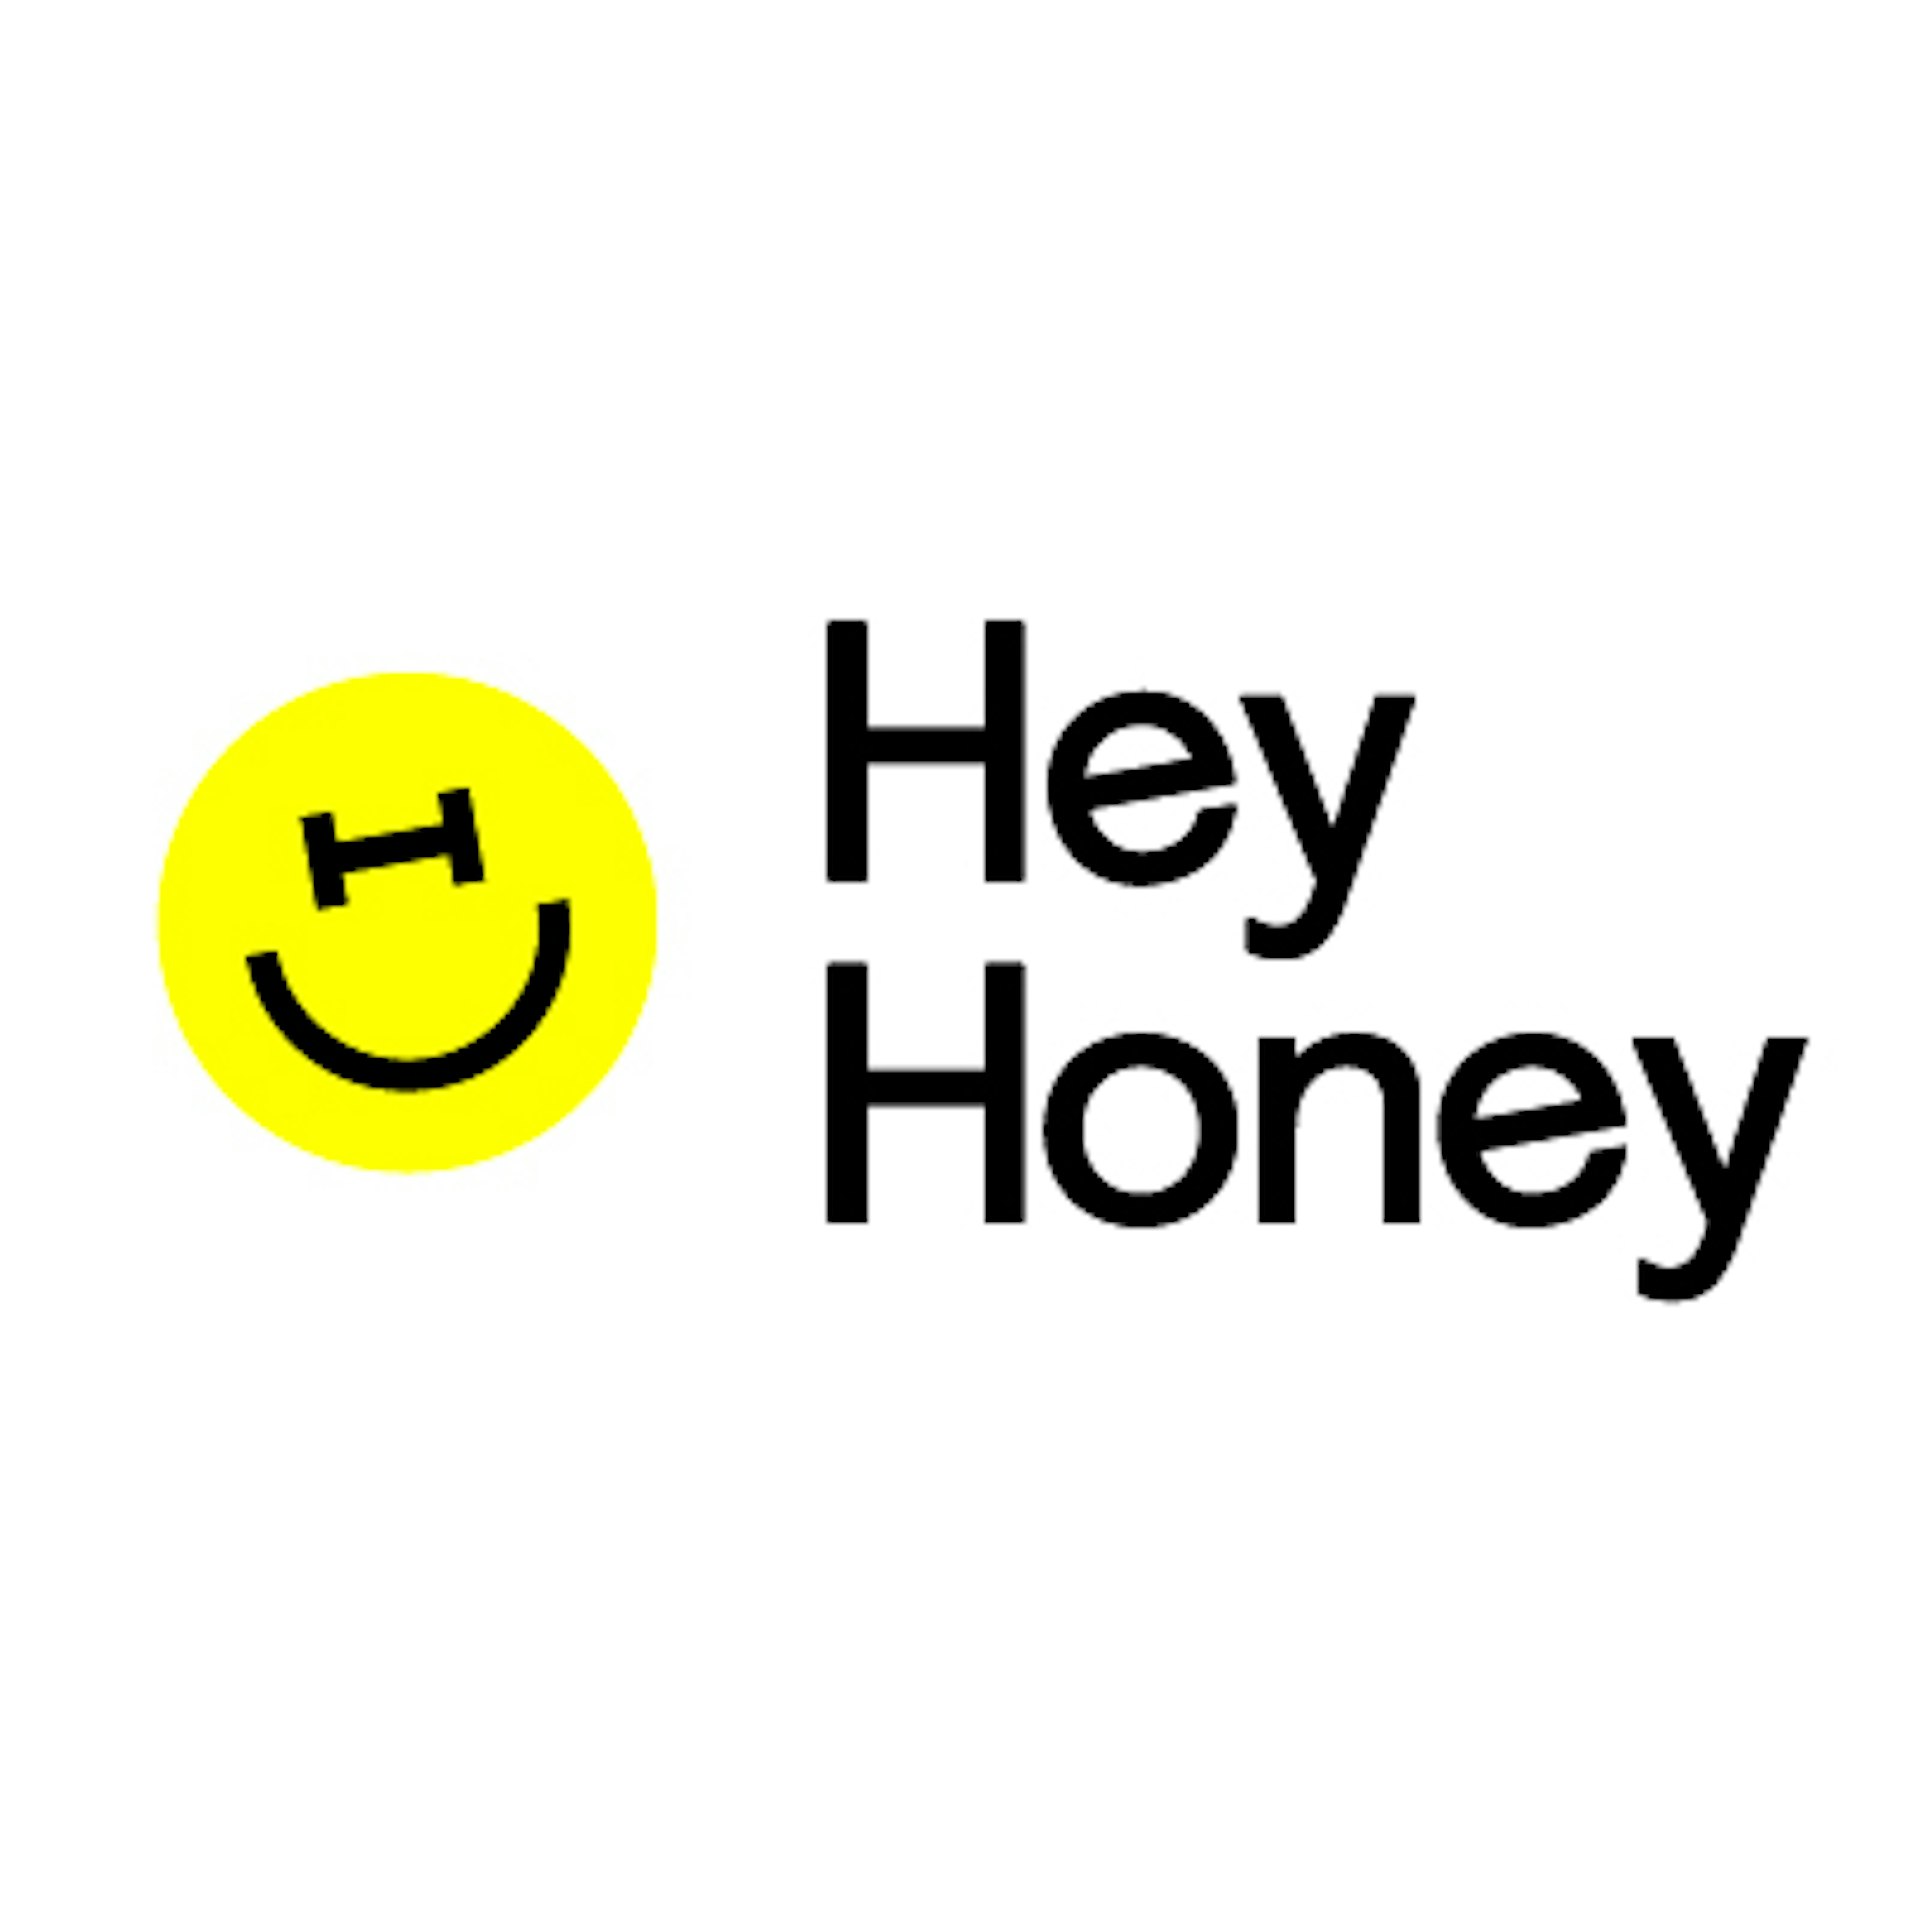 Hey honey. Хей Ханни. Hey Honey Самара. Хей Хани мини Ваффель. Hey Honey the winking2000.